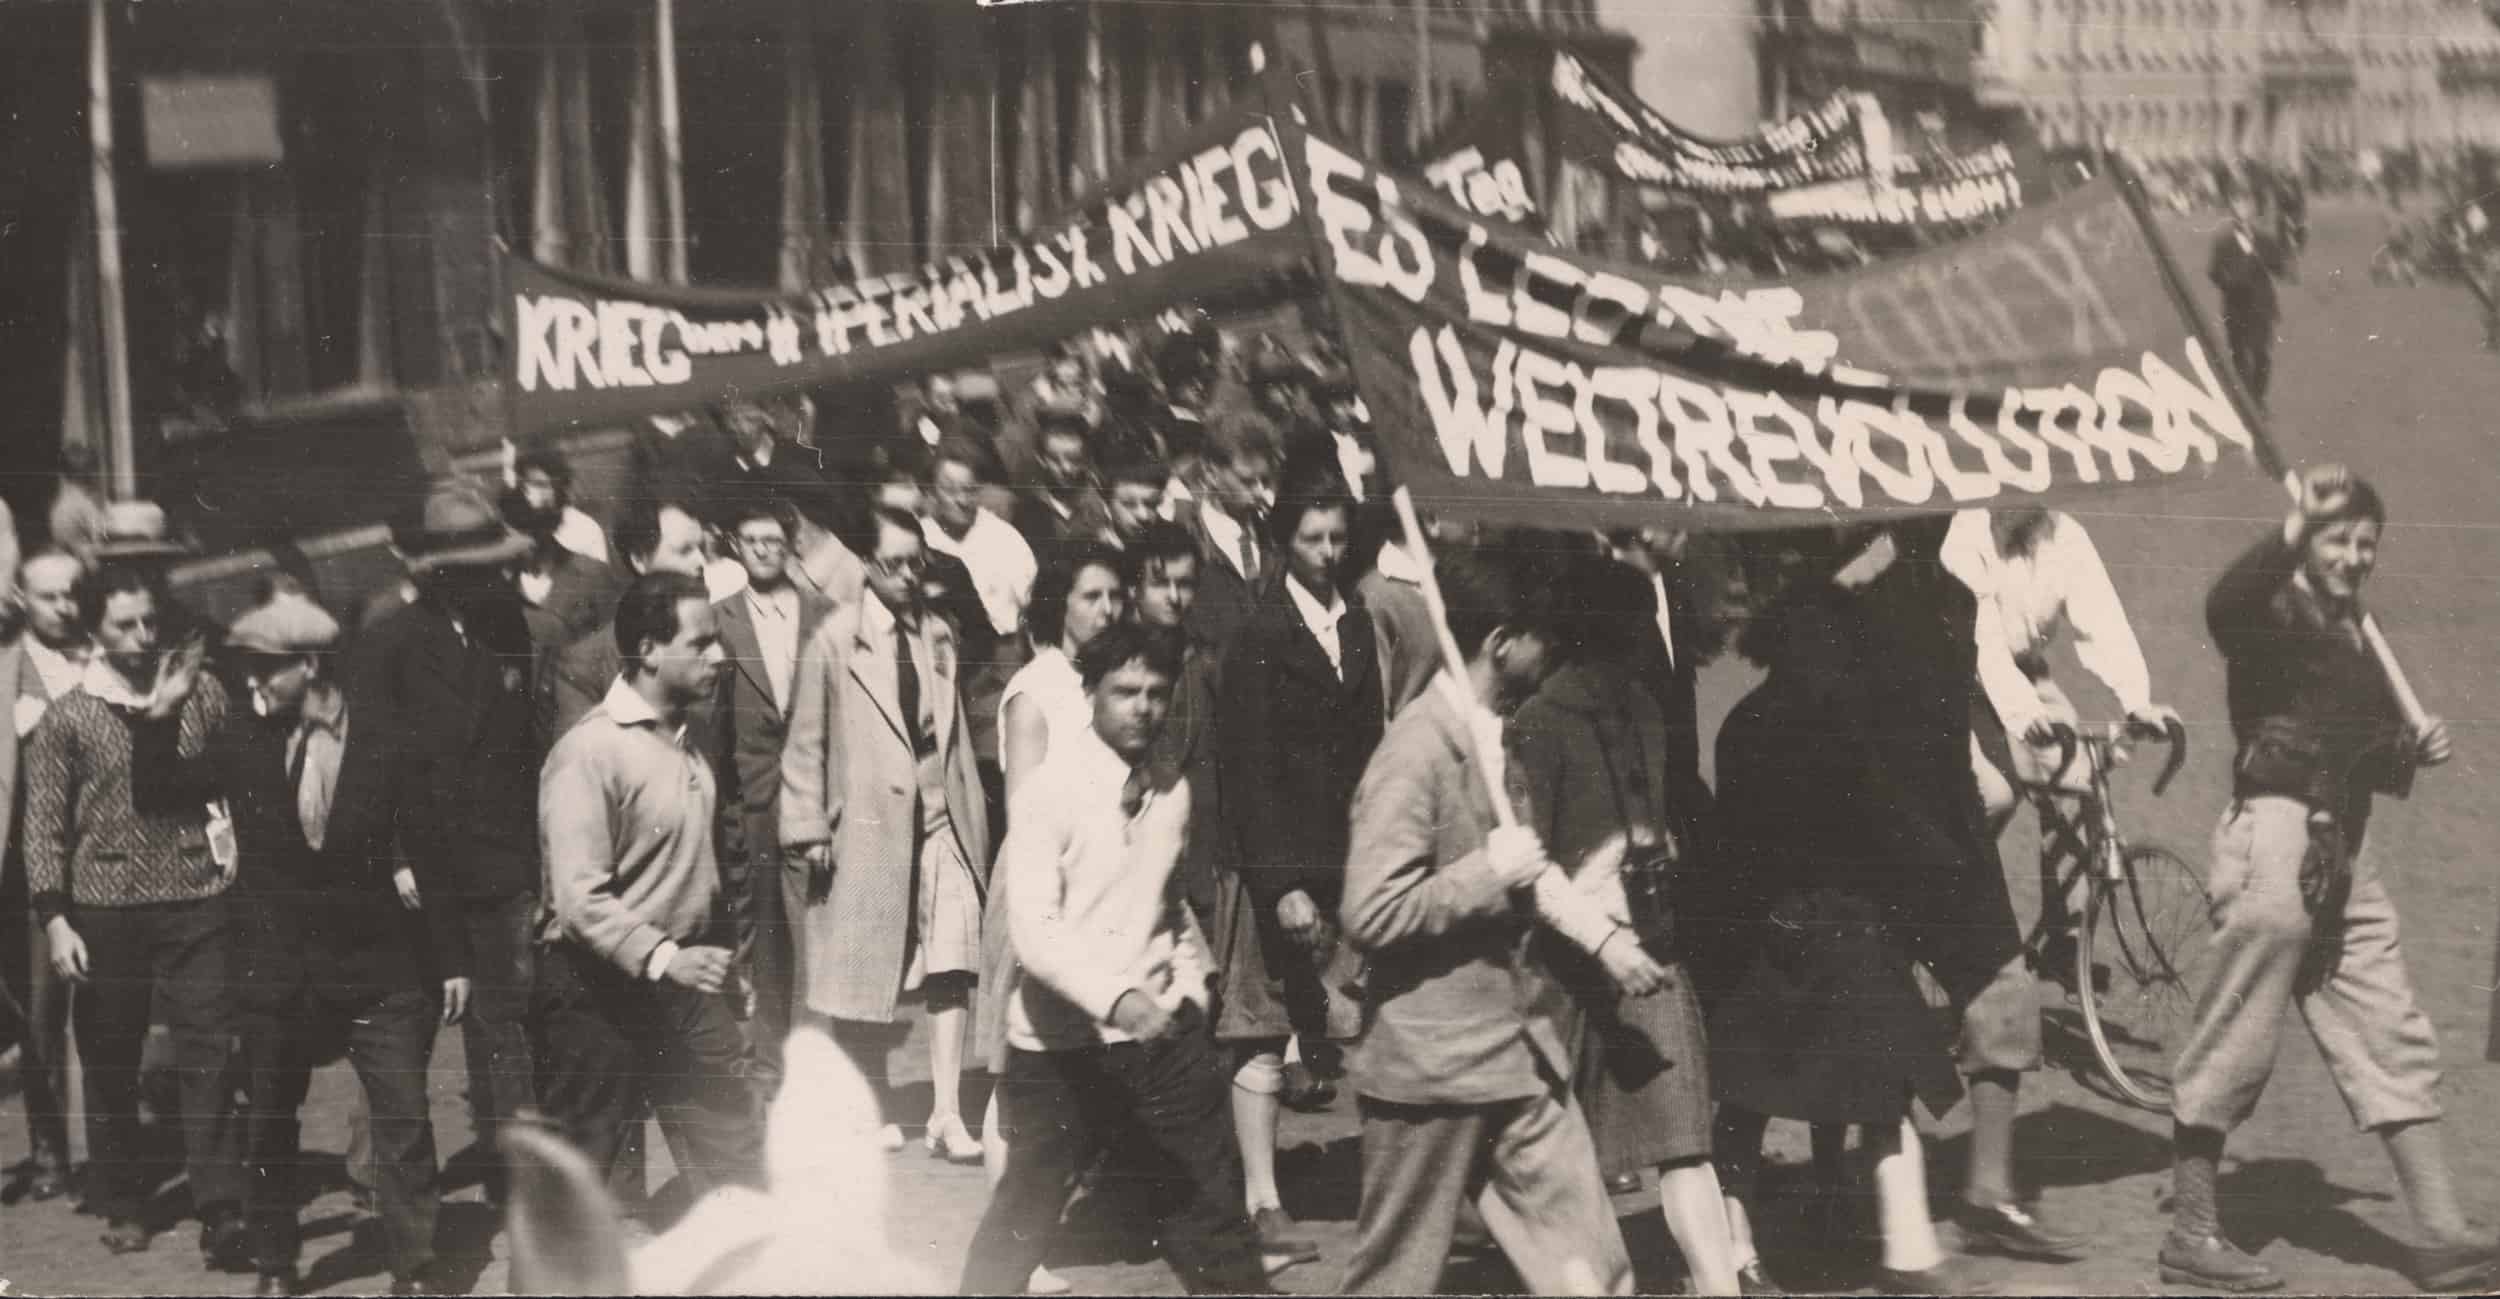 Archivbild. Demonstrierende Personen tragen Plakate